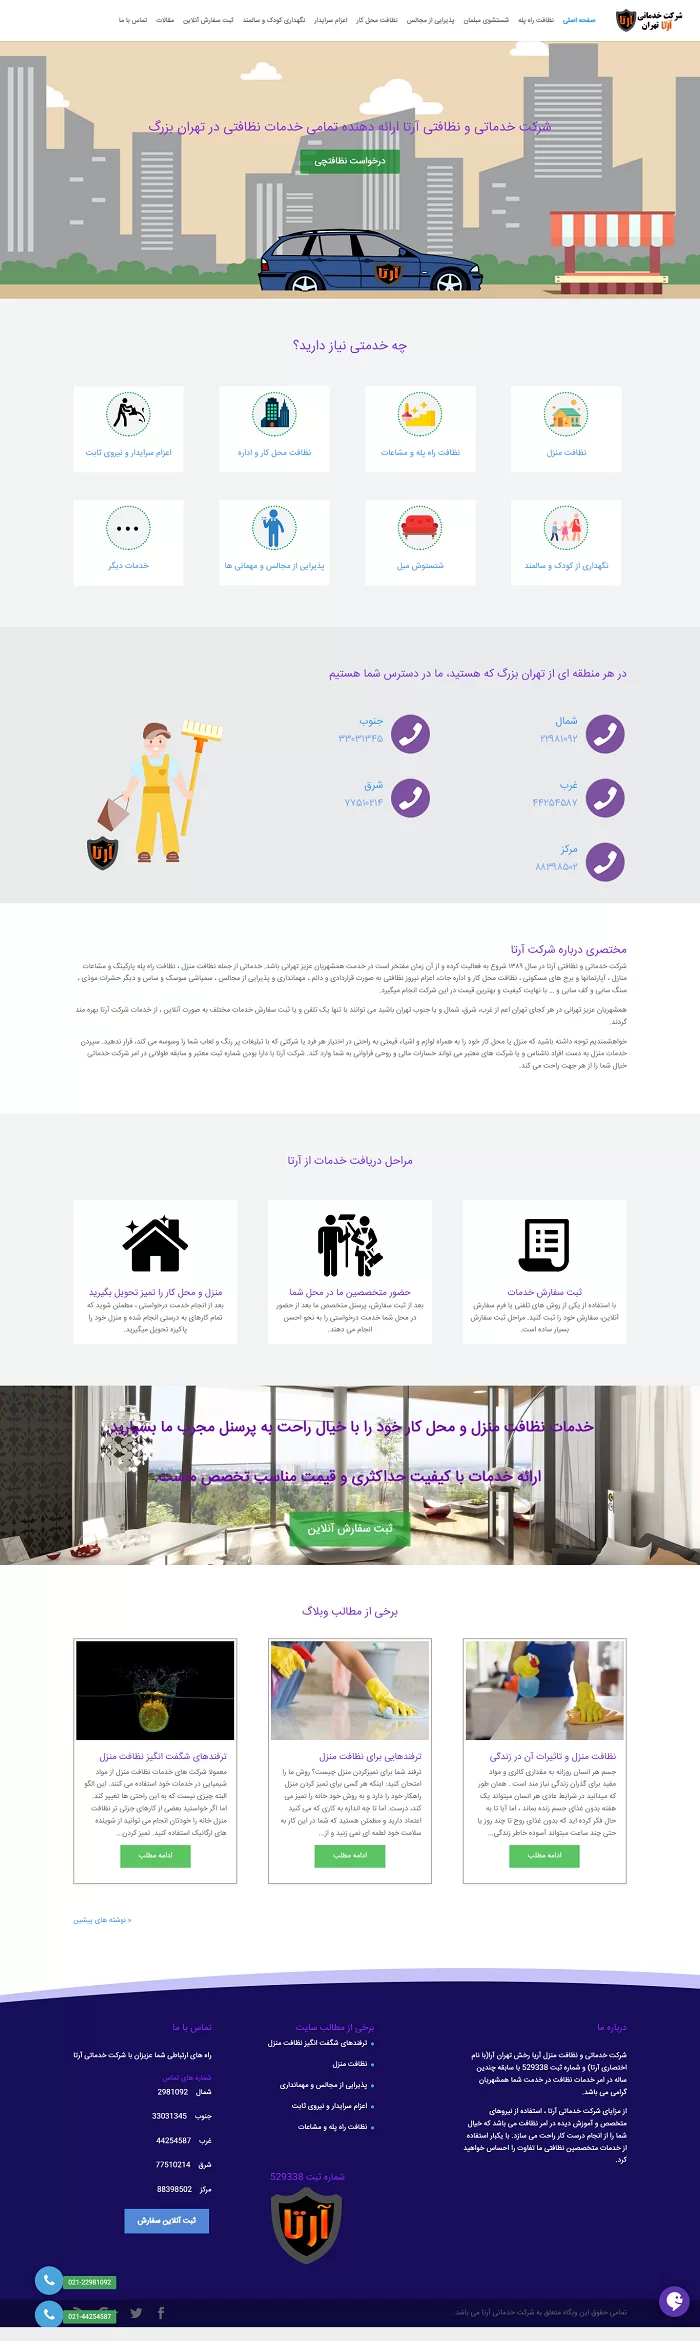 طراحی سایت شرکت خدماتی آرتا